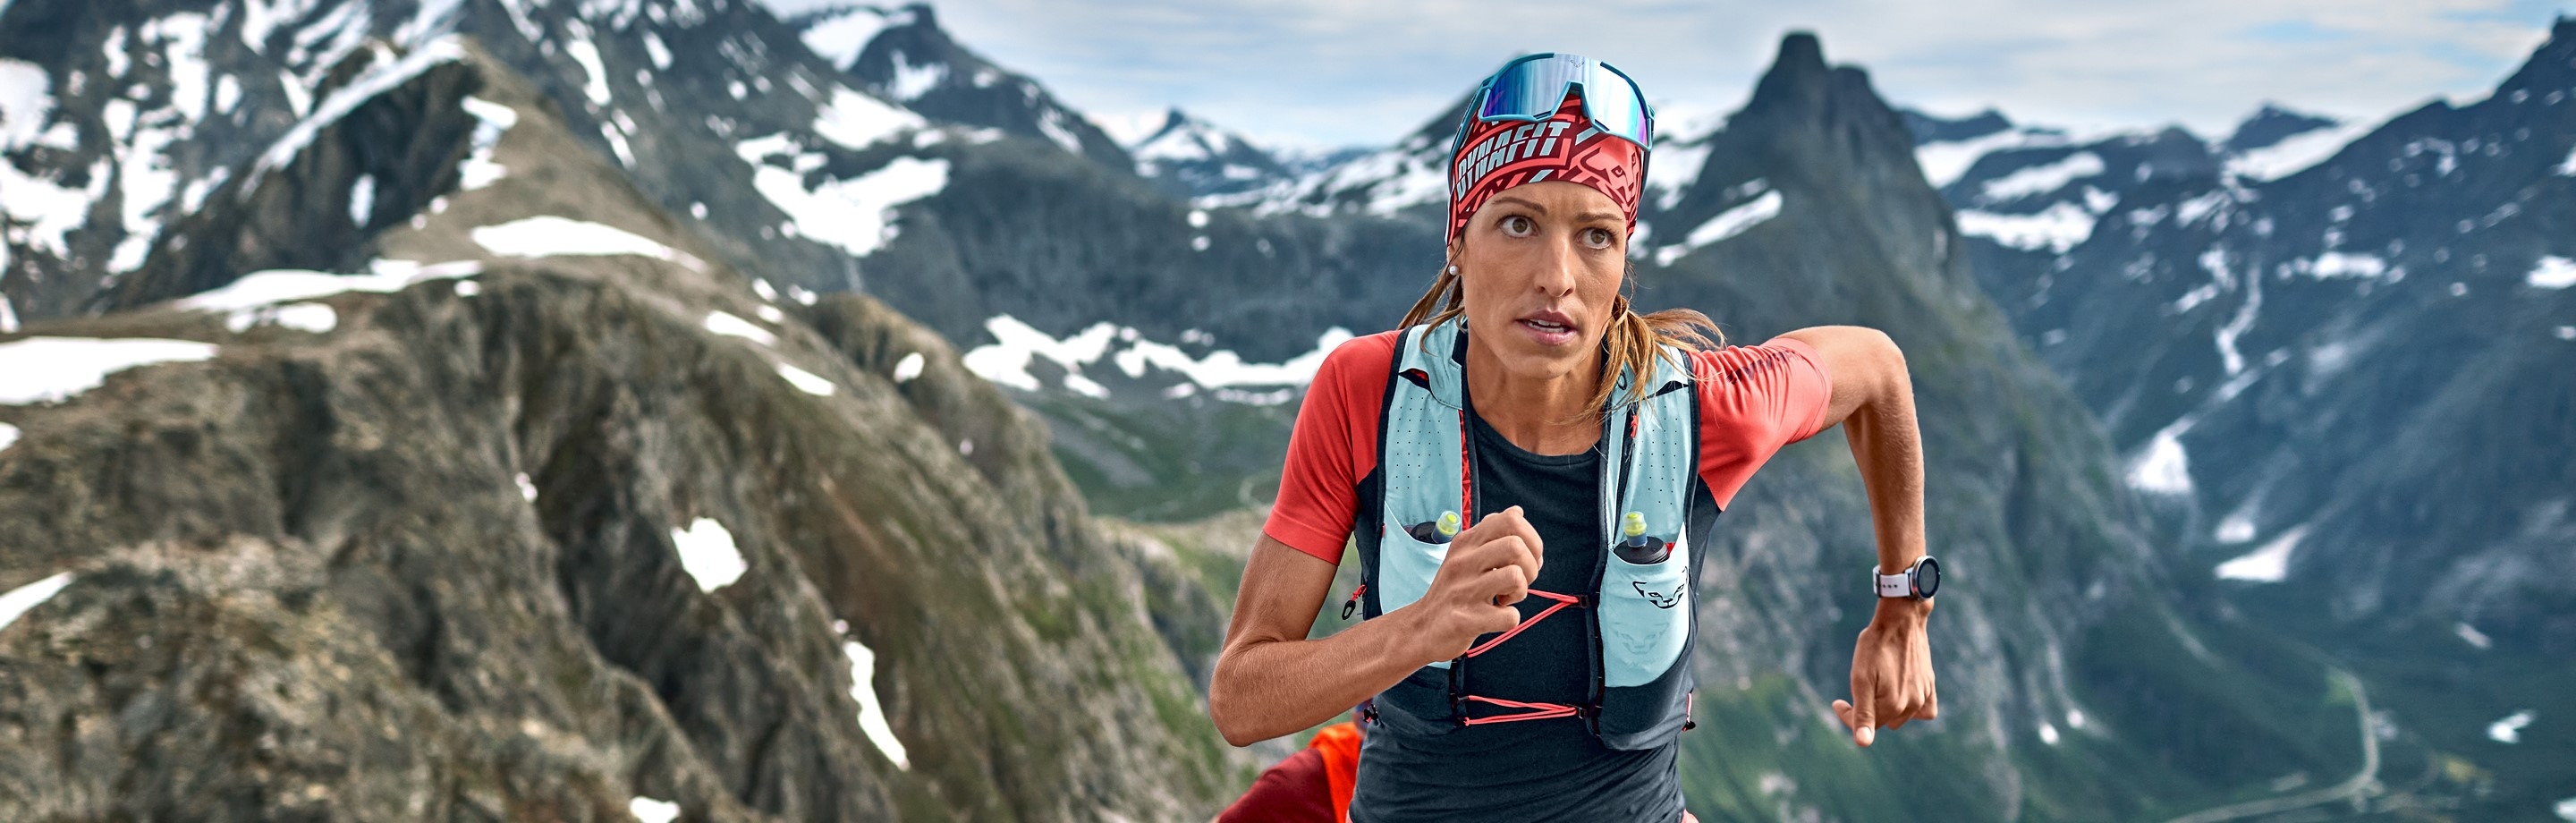 Dynafit Trailrunning-Bekleidung – von Athleten für Athleten